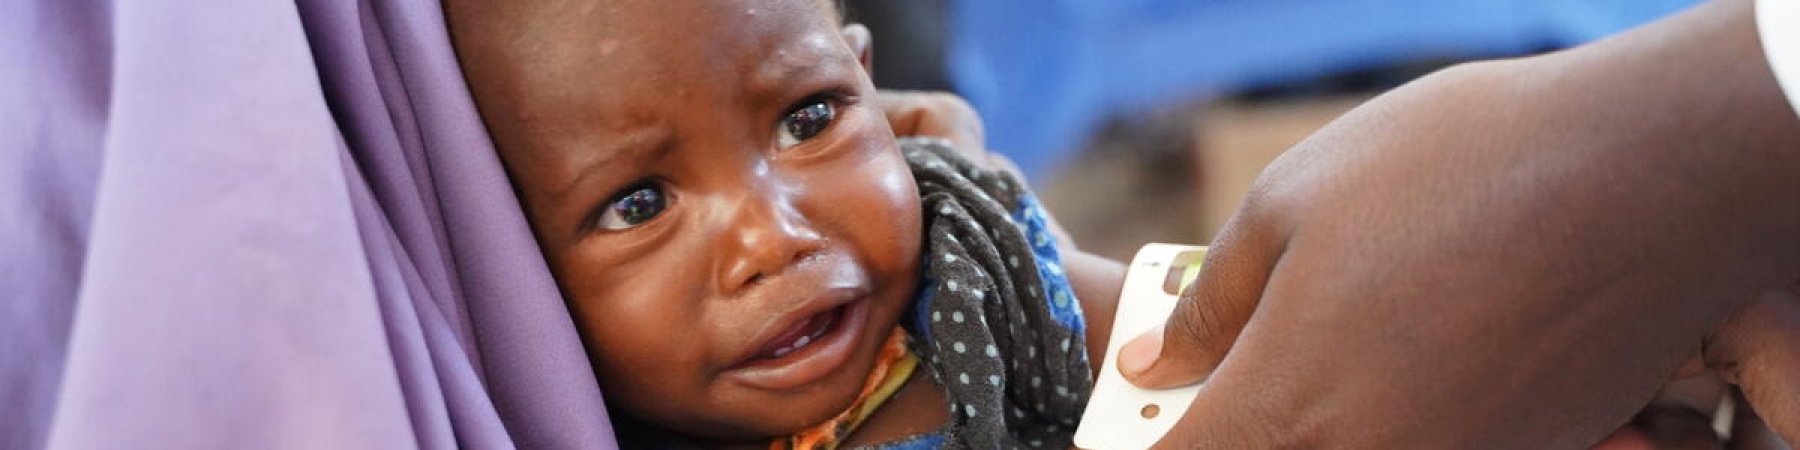 bambina in braccio che piange mentre le misurano il livello di malnutrizione con il brsaccialetto MUAC